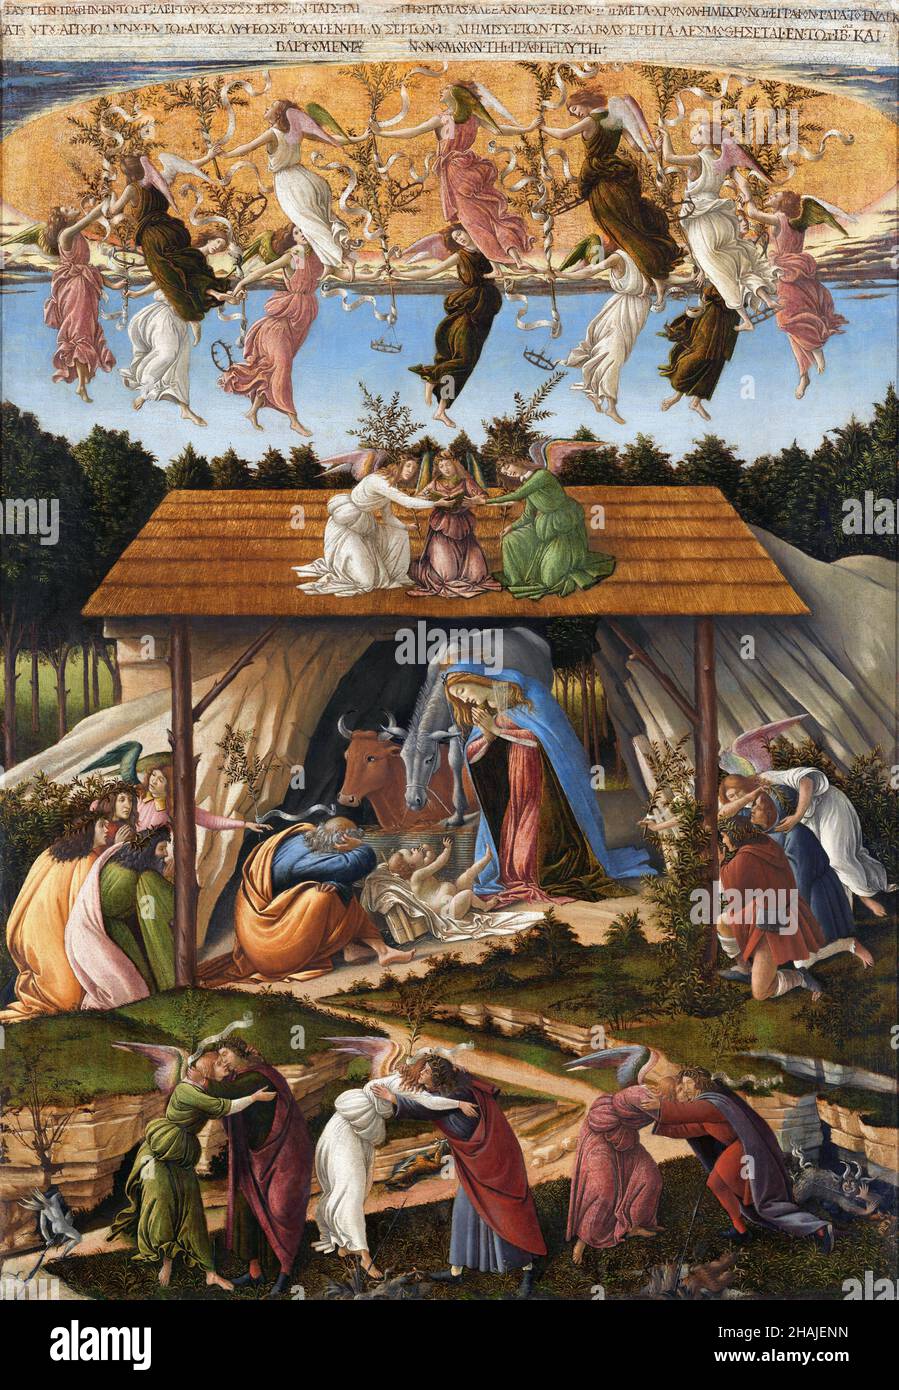 Nativité mystique de Sandro Botticelli (Alessandro di Mariano di Vanni Filipepi, c.1445-1510), huile sur toile, 1500 Banque D'Images